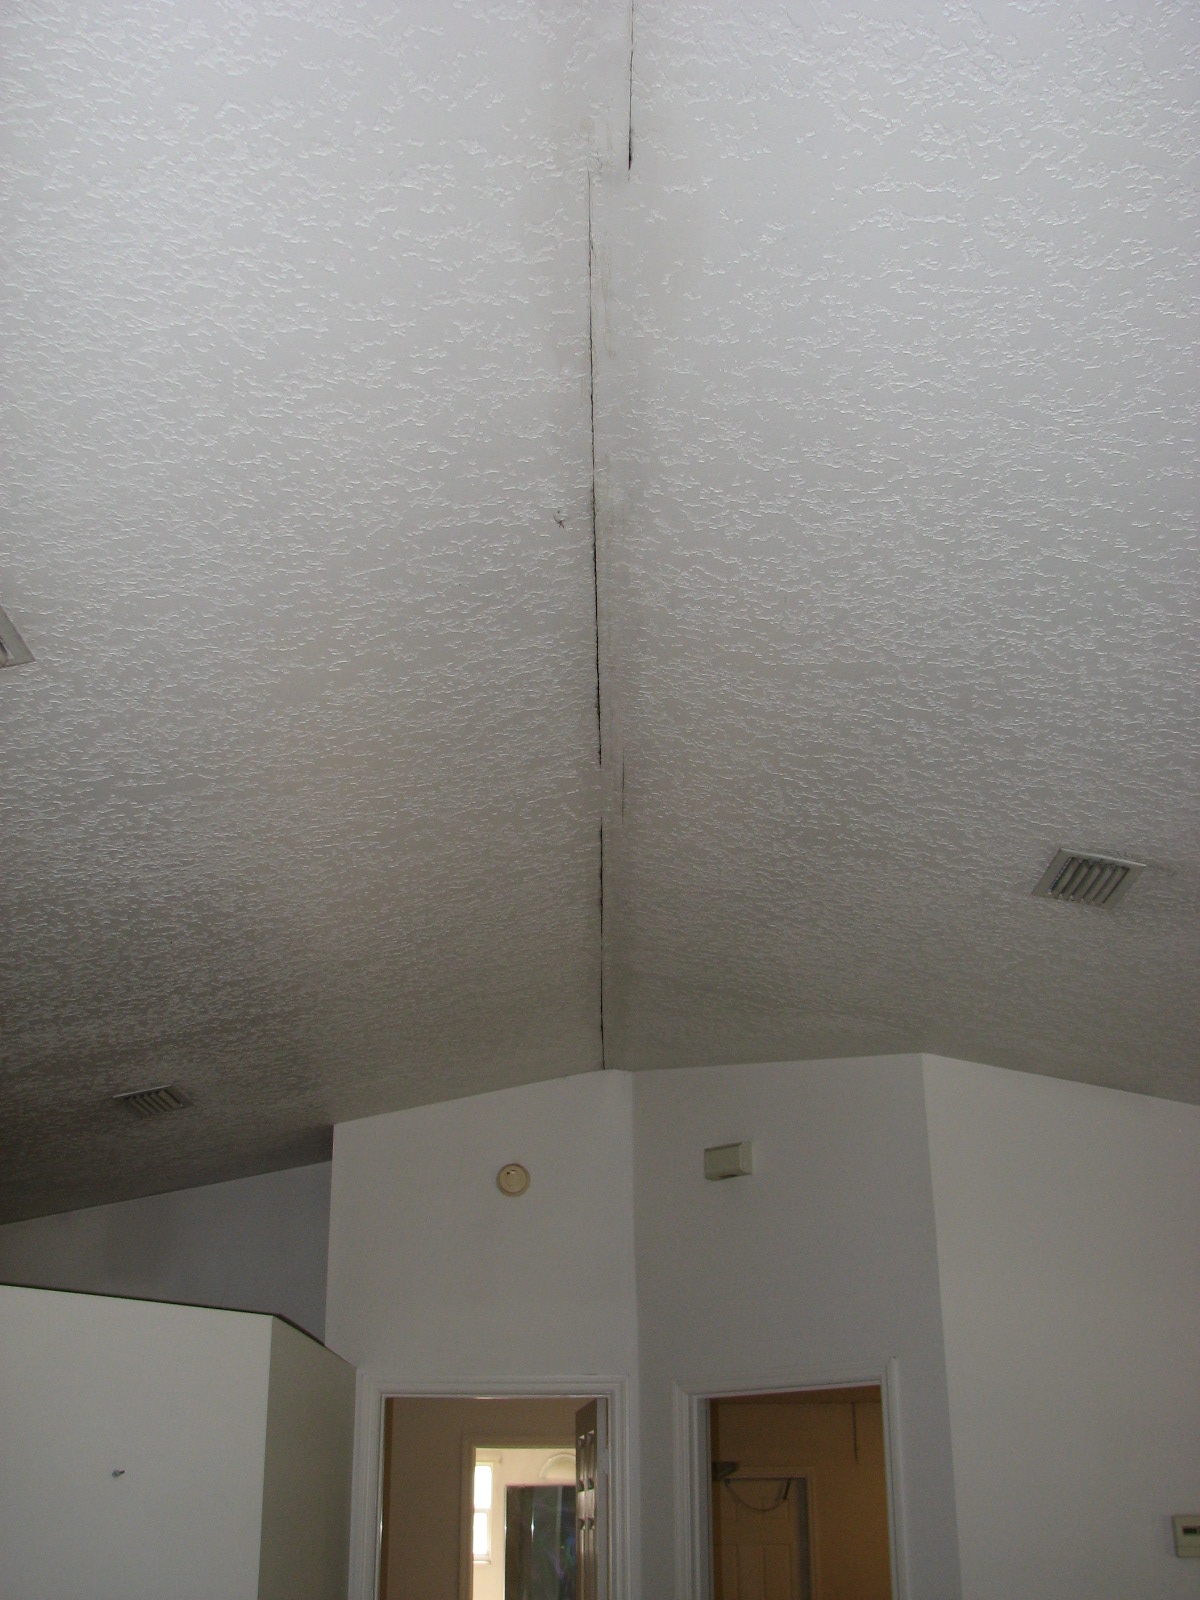 How Drywall Repair Drywall Ceiling Repair